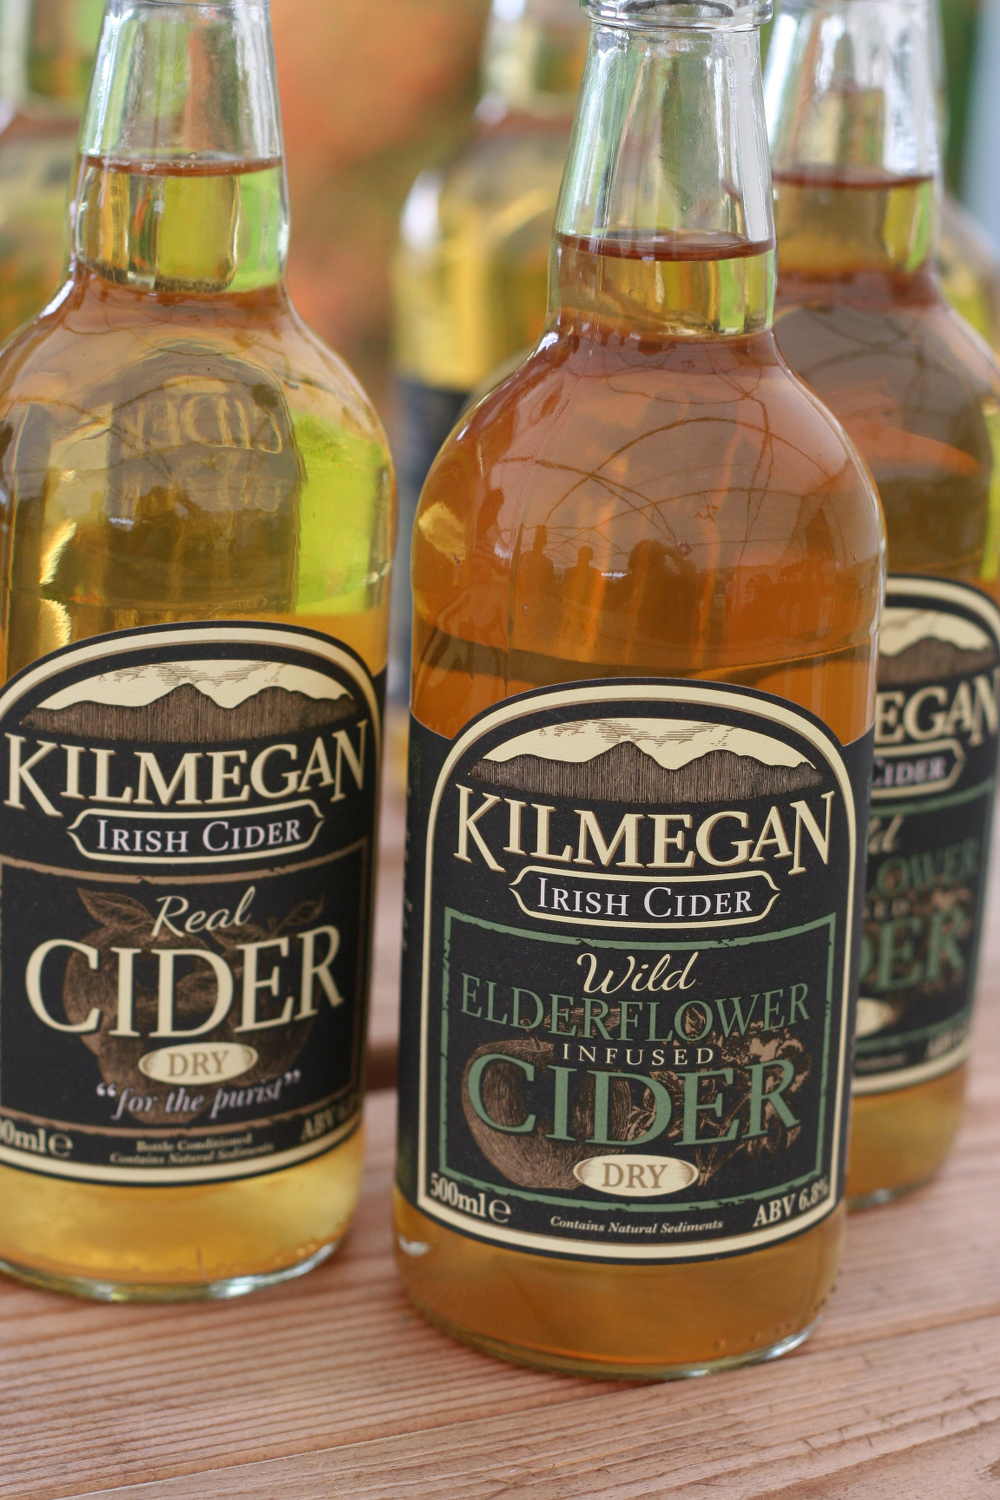 Kilmegan Wild Elderflower-Infused Cider